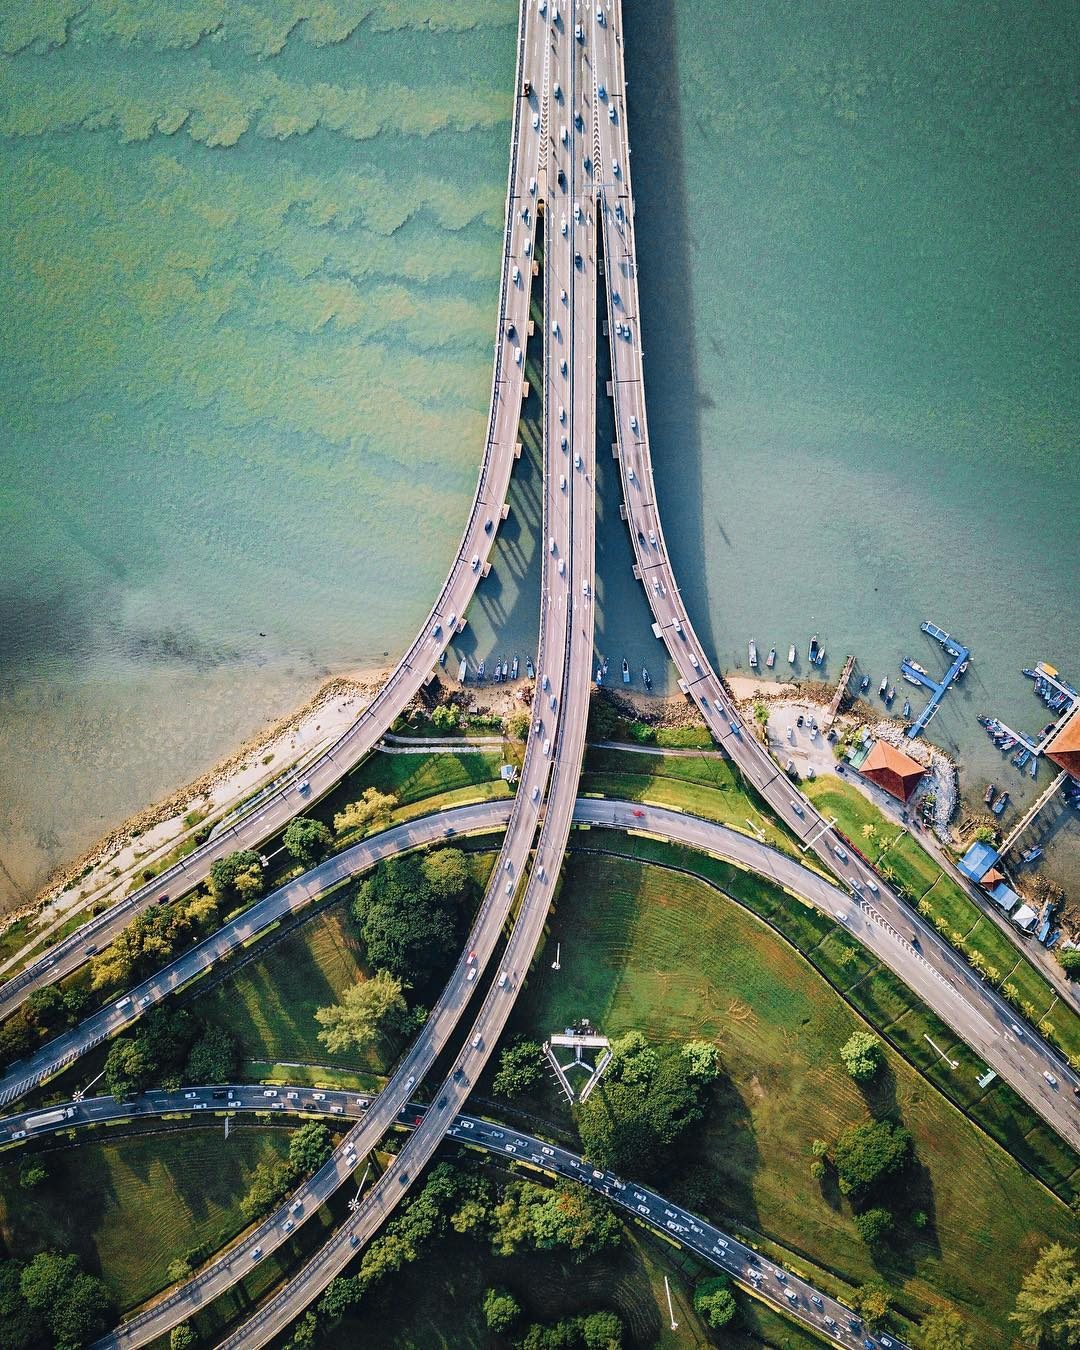 Penang Bridge bird’s-eye view by Jack